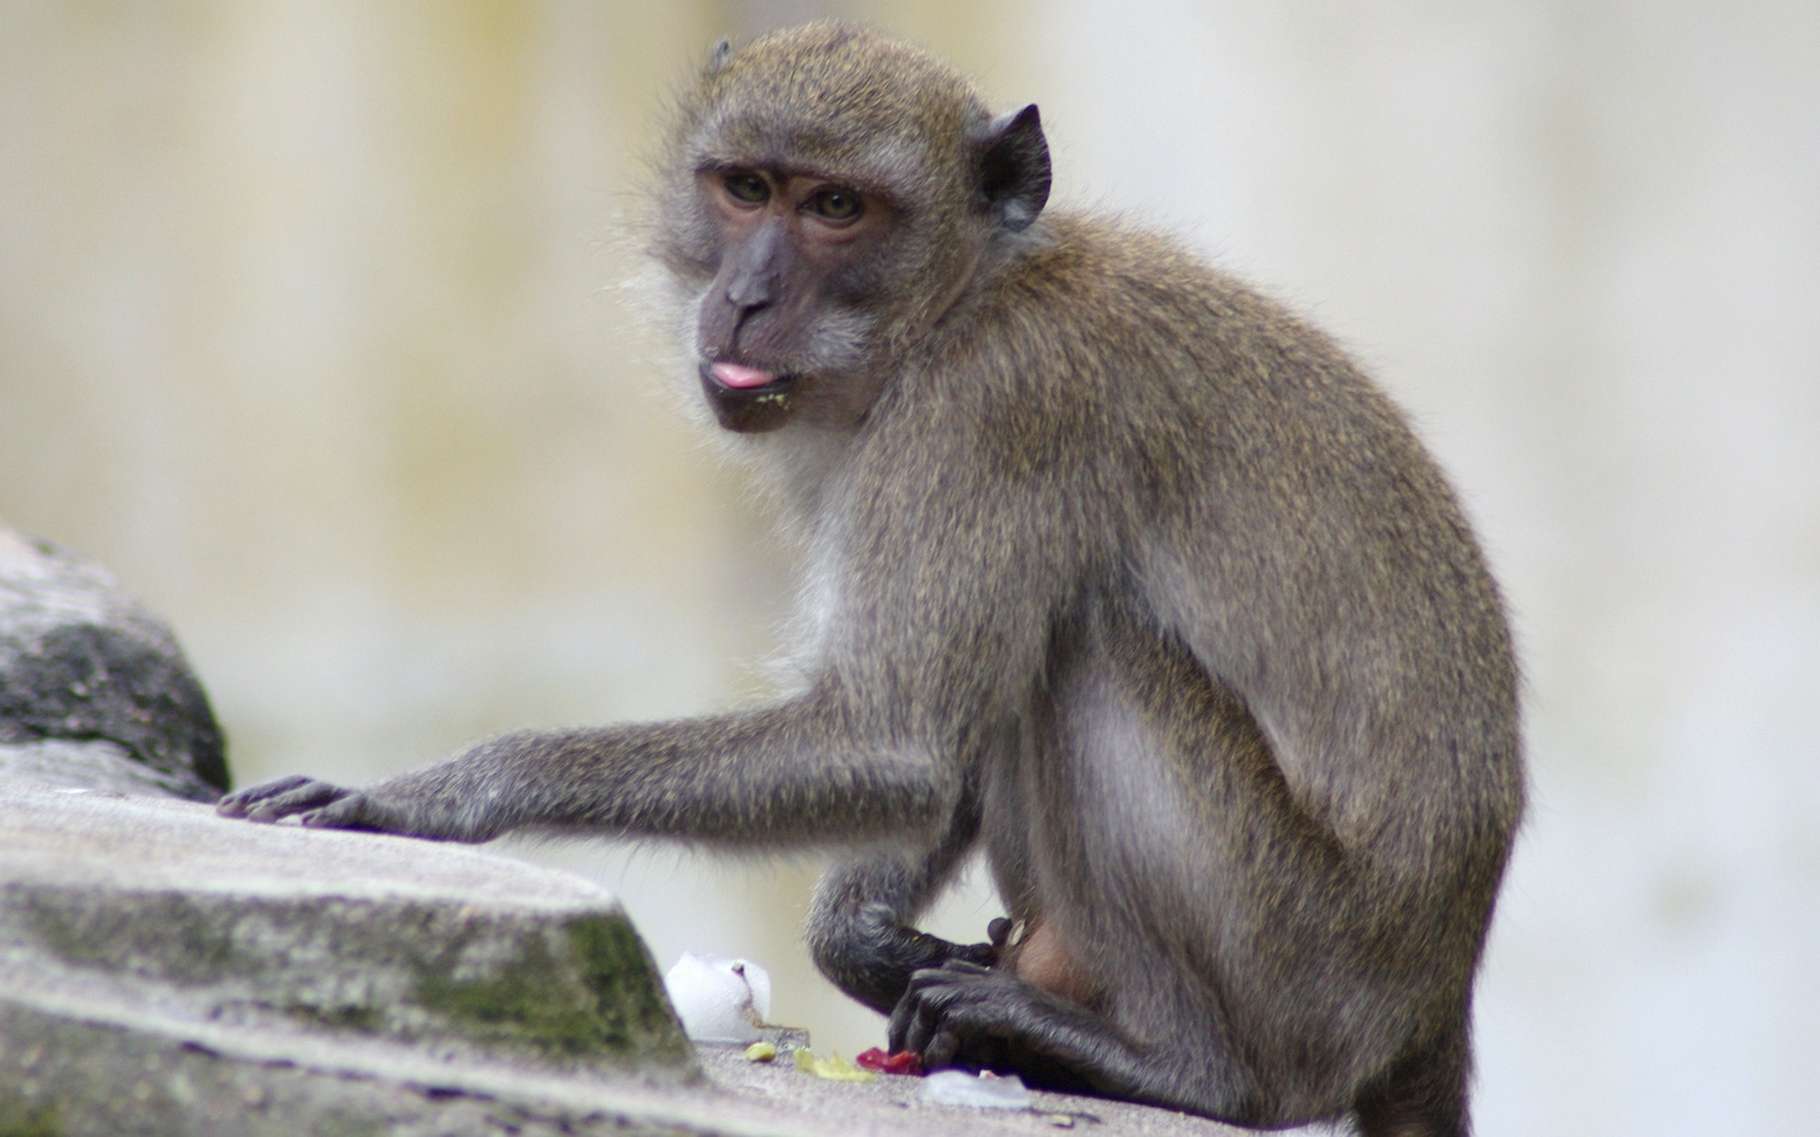 Le macaque crabier est l’un des singes les plus connus au monde. Et au contact des Hommes, il a appris une ruse qui lui permet de se nourrir. Pas si bêtes, ce petit singe ! © ptitmec54, Adobe Stock